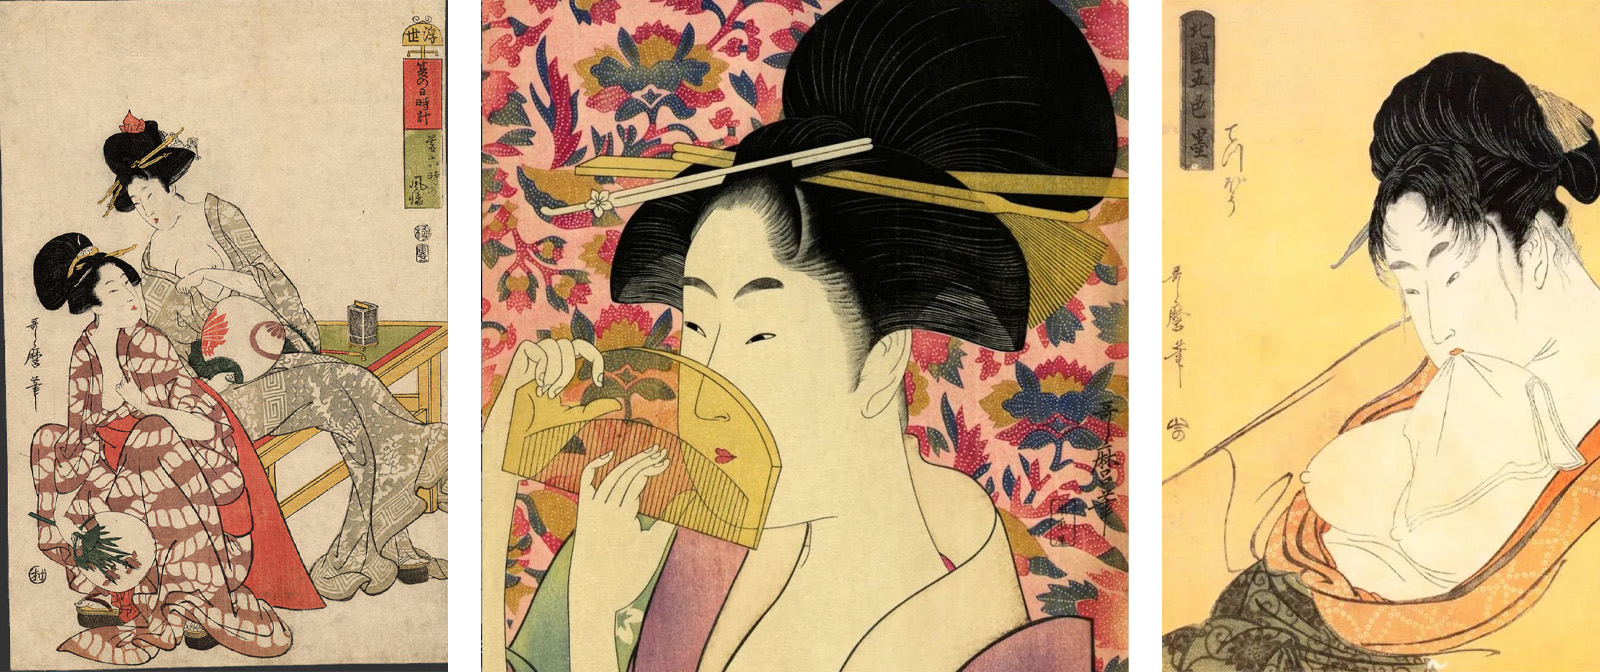 Мастер непристойных гравюр сюнга и портретов изысканных красавиц. Китагава Утамаро. 